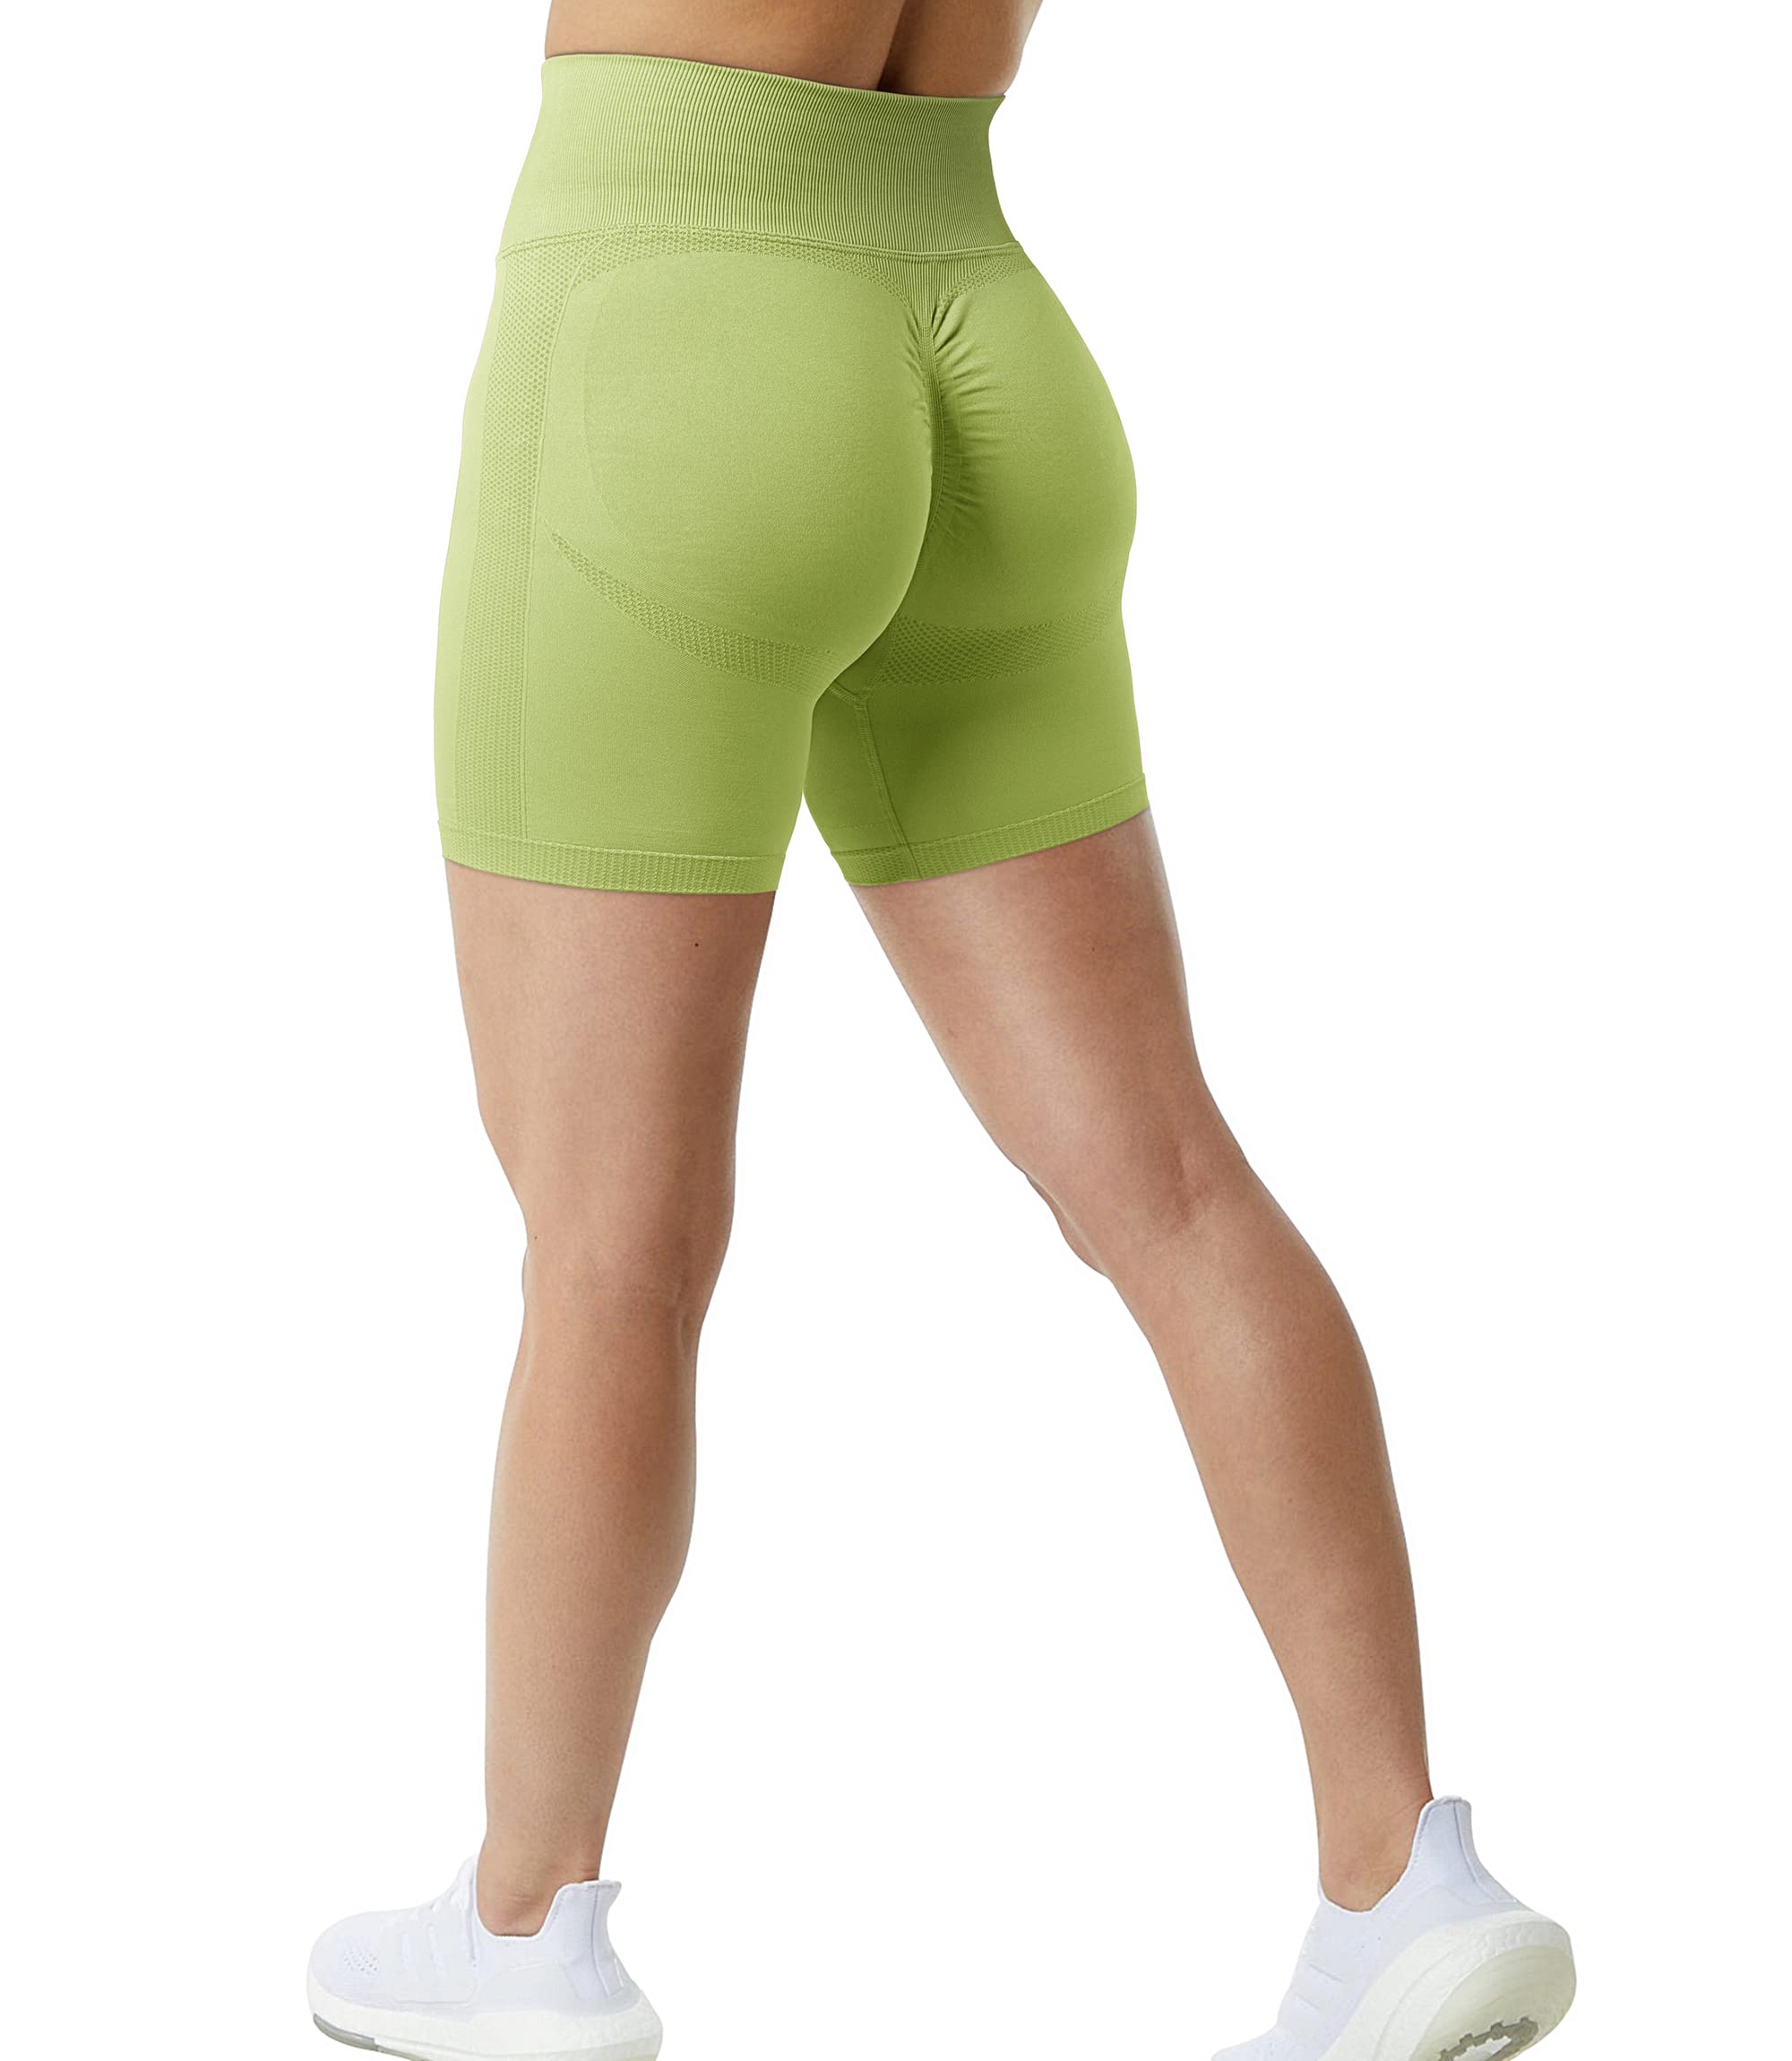 JANVUR Scrunch Butt Lifting Workout Shorts for Women High Waisted